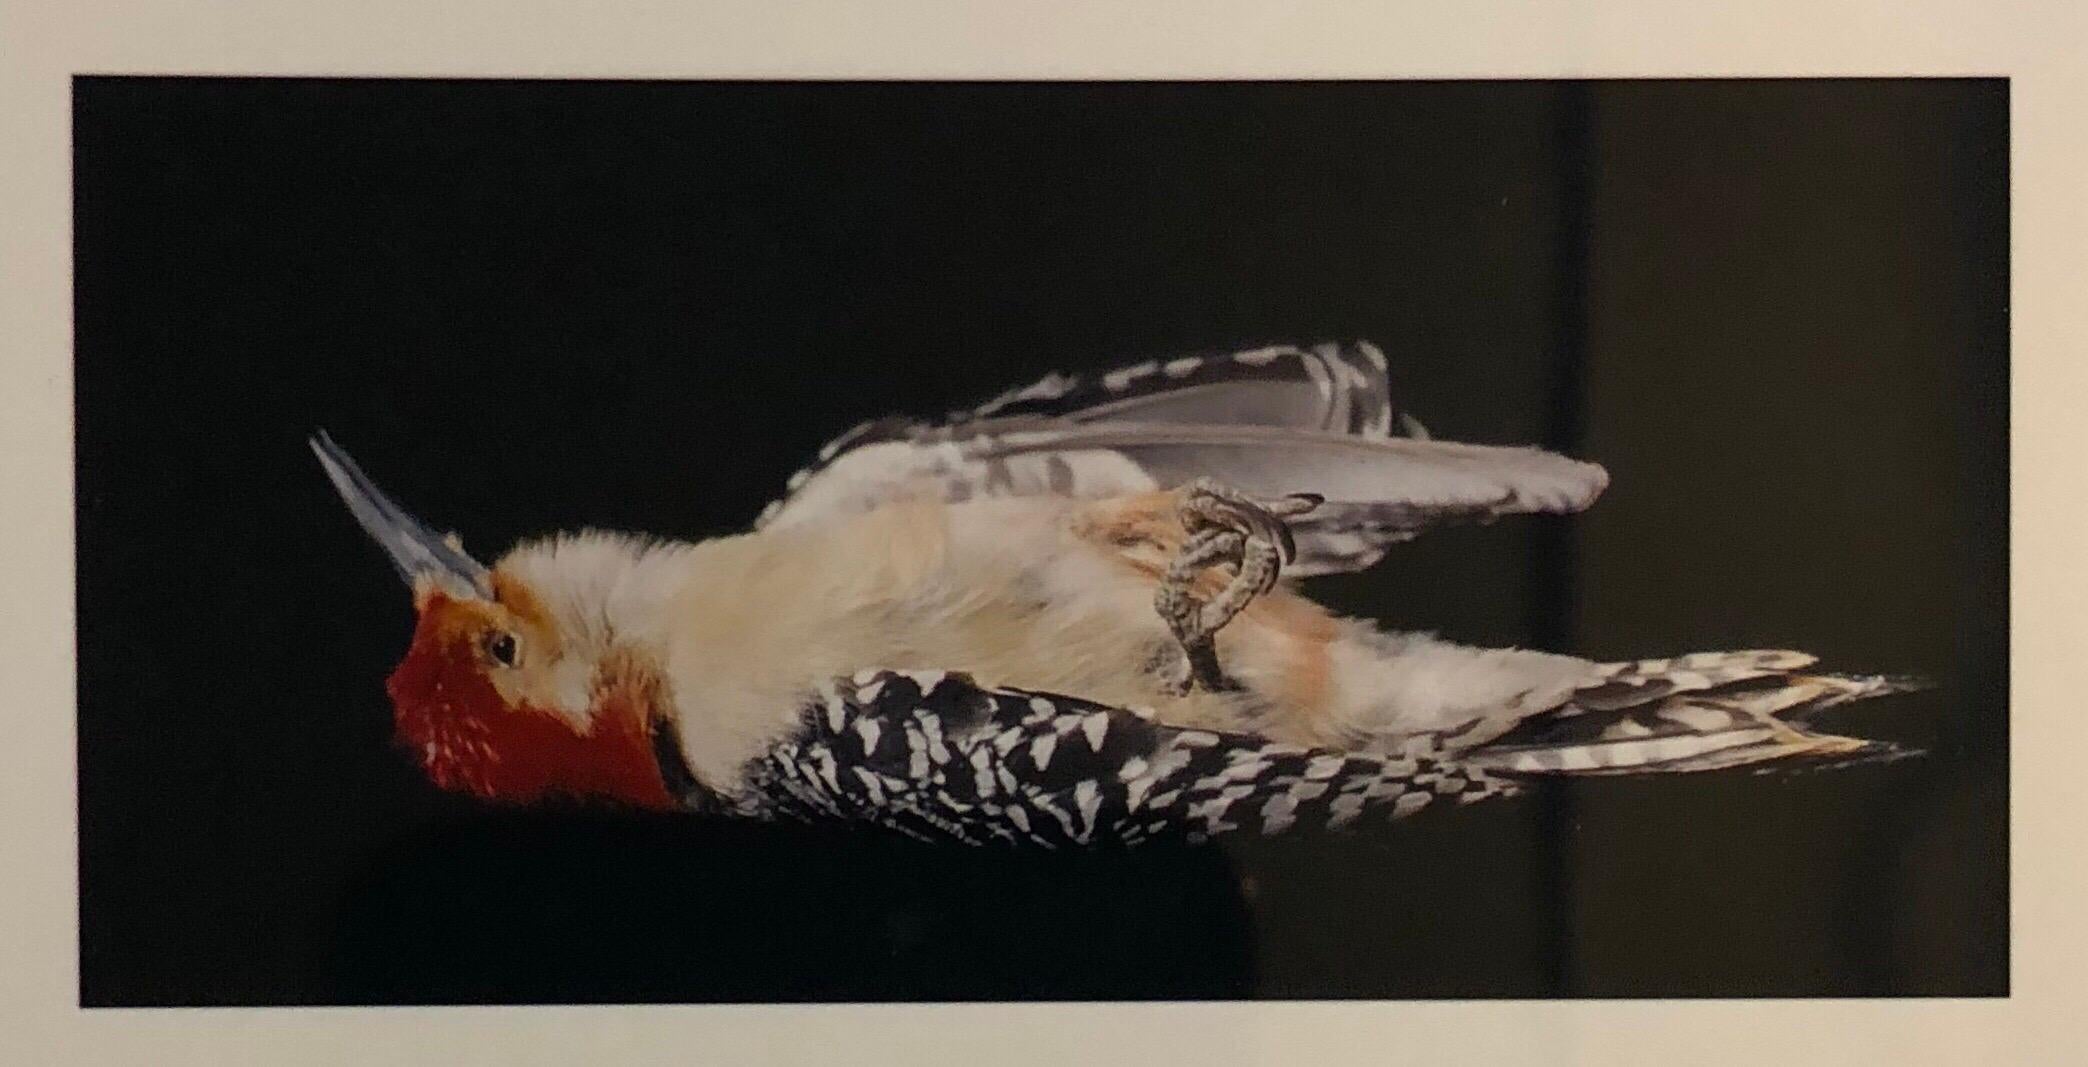 Oiseaux et photographies cibachromes, art conceptuel signé - Conceptuel Photograph par Brenda Zlamany